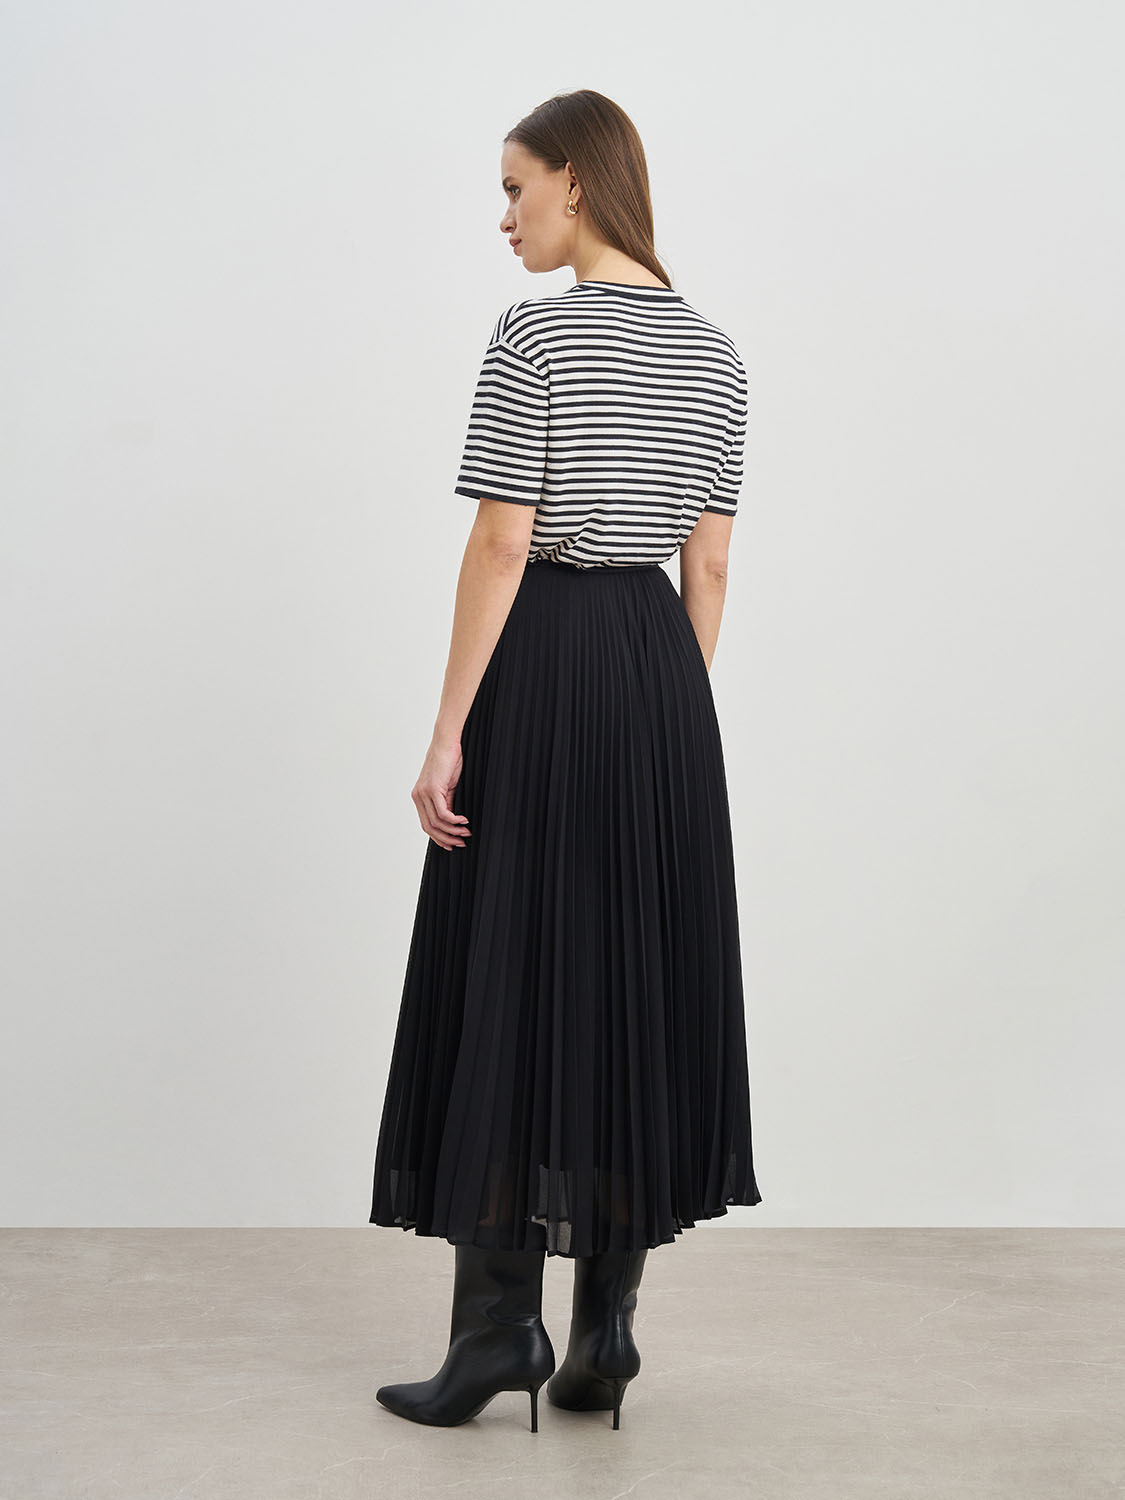 Купить дешево юбку из трикотажа с притачным поясом с широкой резинкой на сайте Апарт